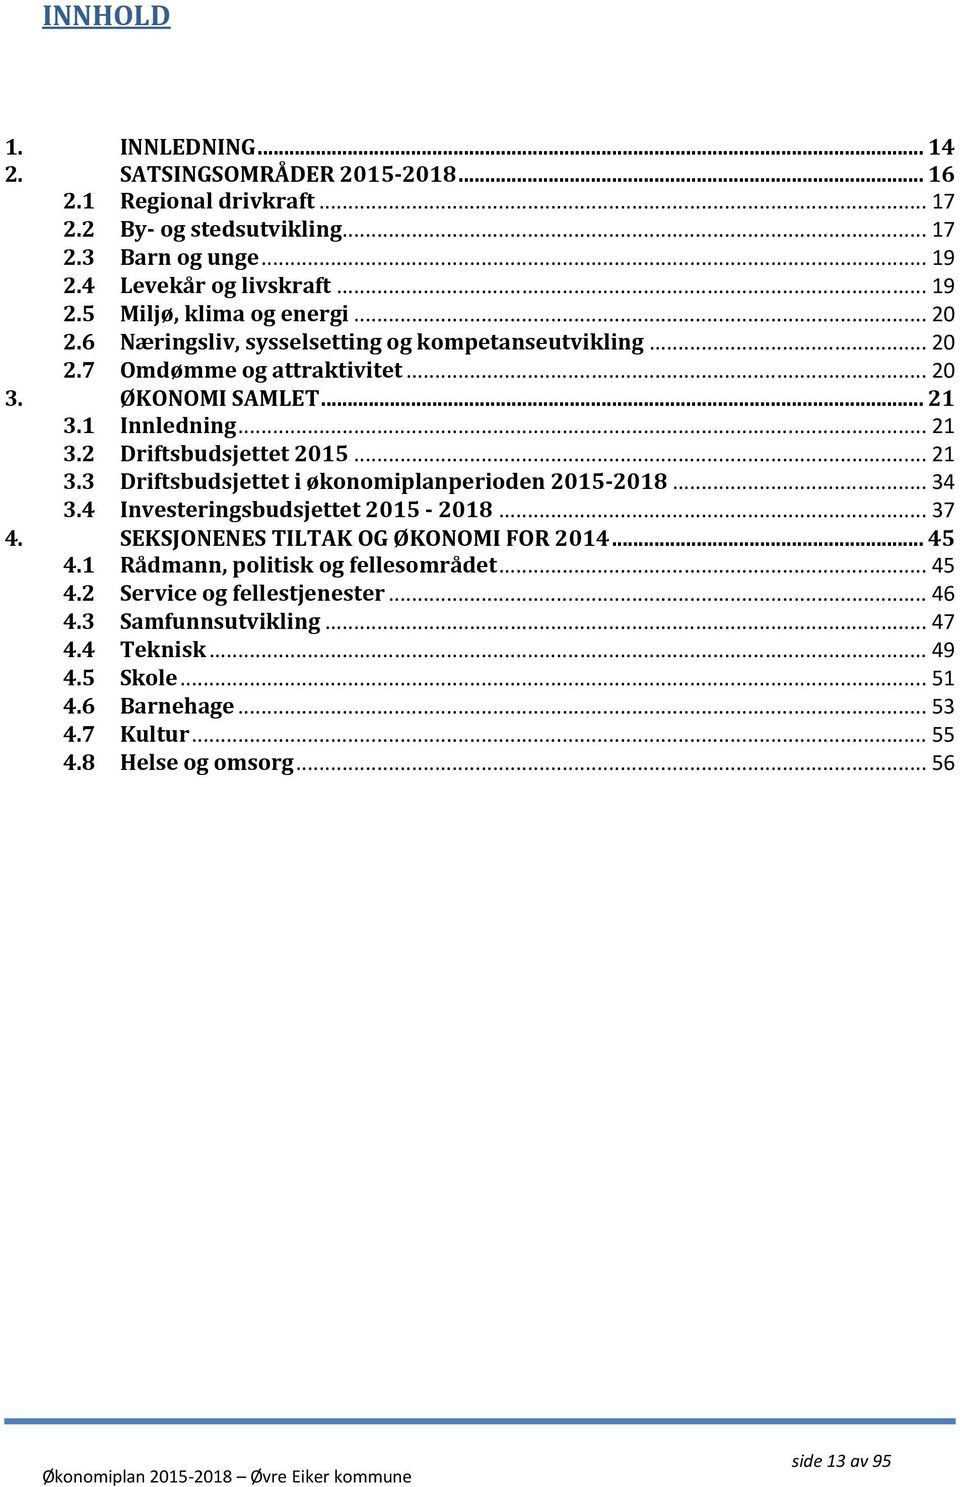 .. 34 3.4 Investeringsbudsjettet 2015-2018... 37 4. SEKSJONENES TILTAK OG ØKONOMI FOR 2014... 45 4.1 Rådmann, politisk og fellesområdet... 45 4.2 Service og fellestjenester... 46 4.